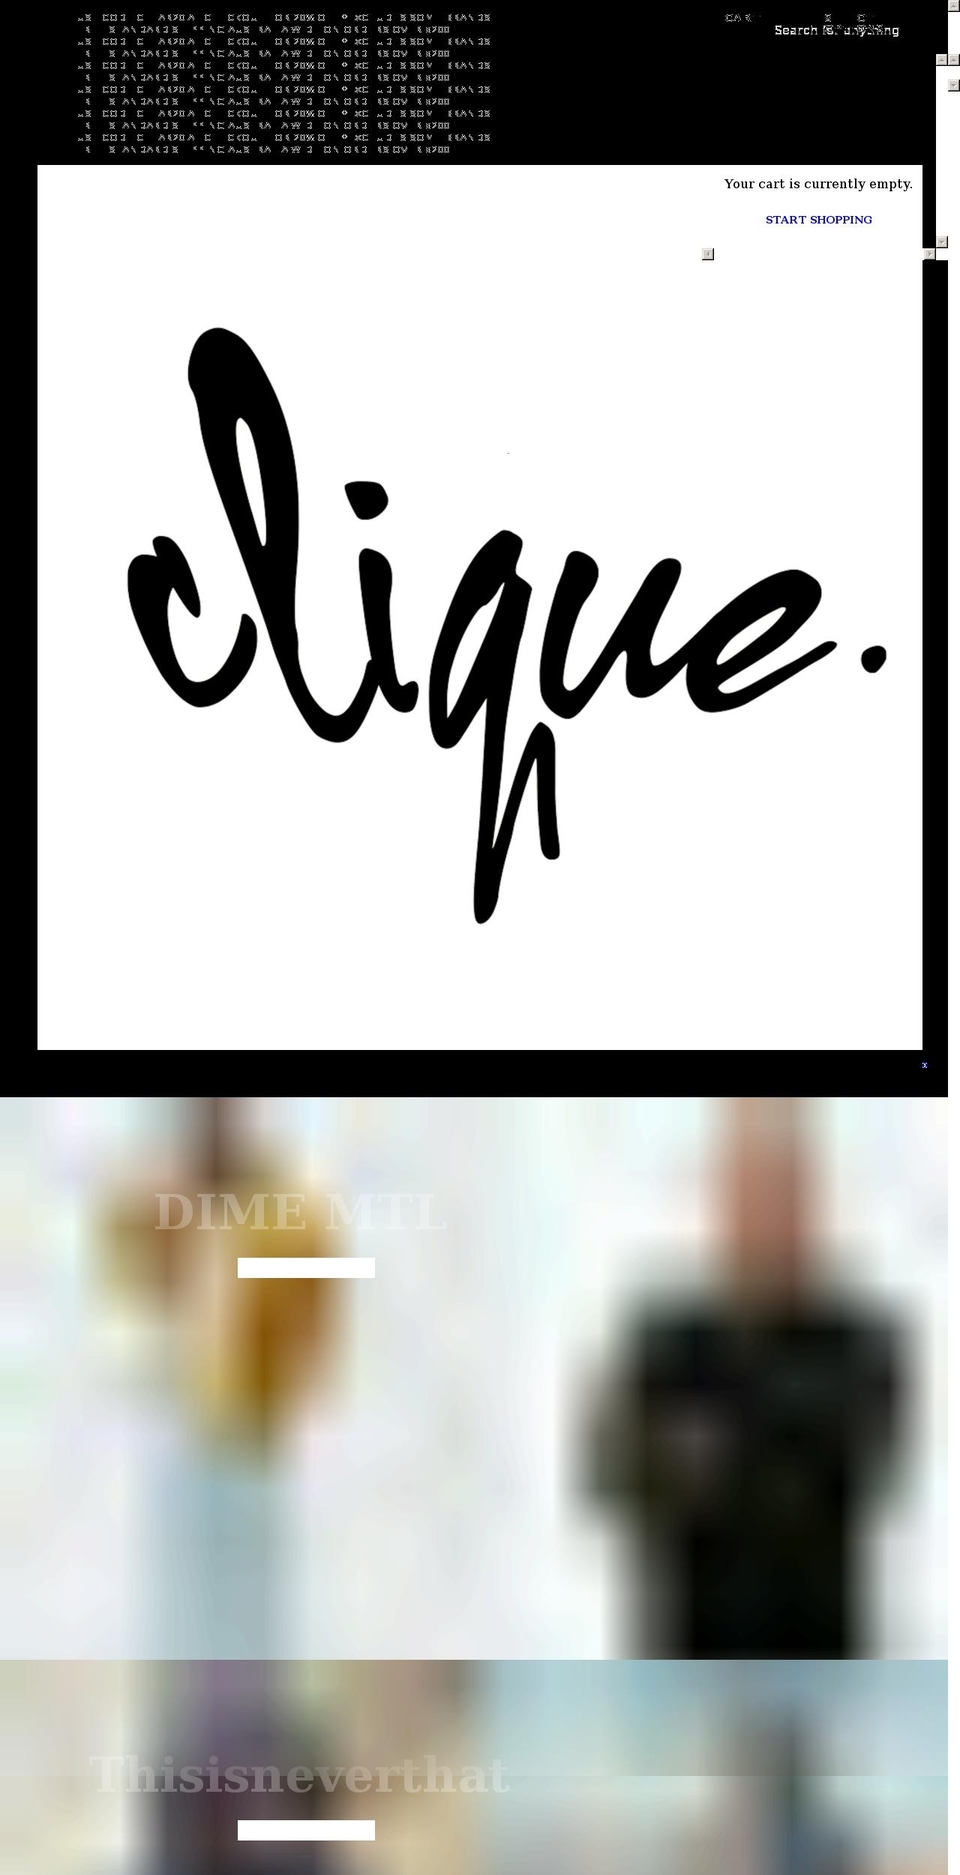 cliquelyf.com shopify website screenshot